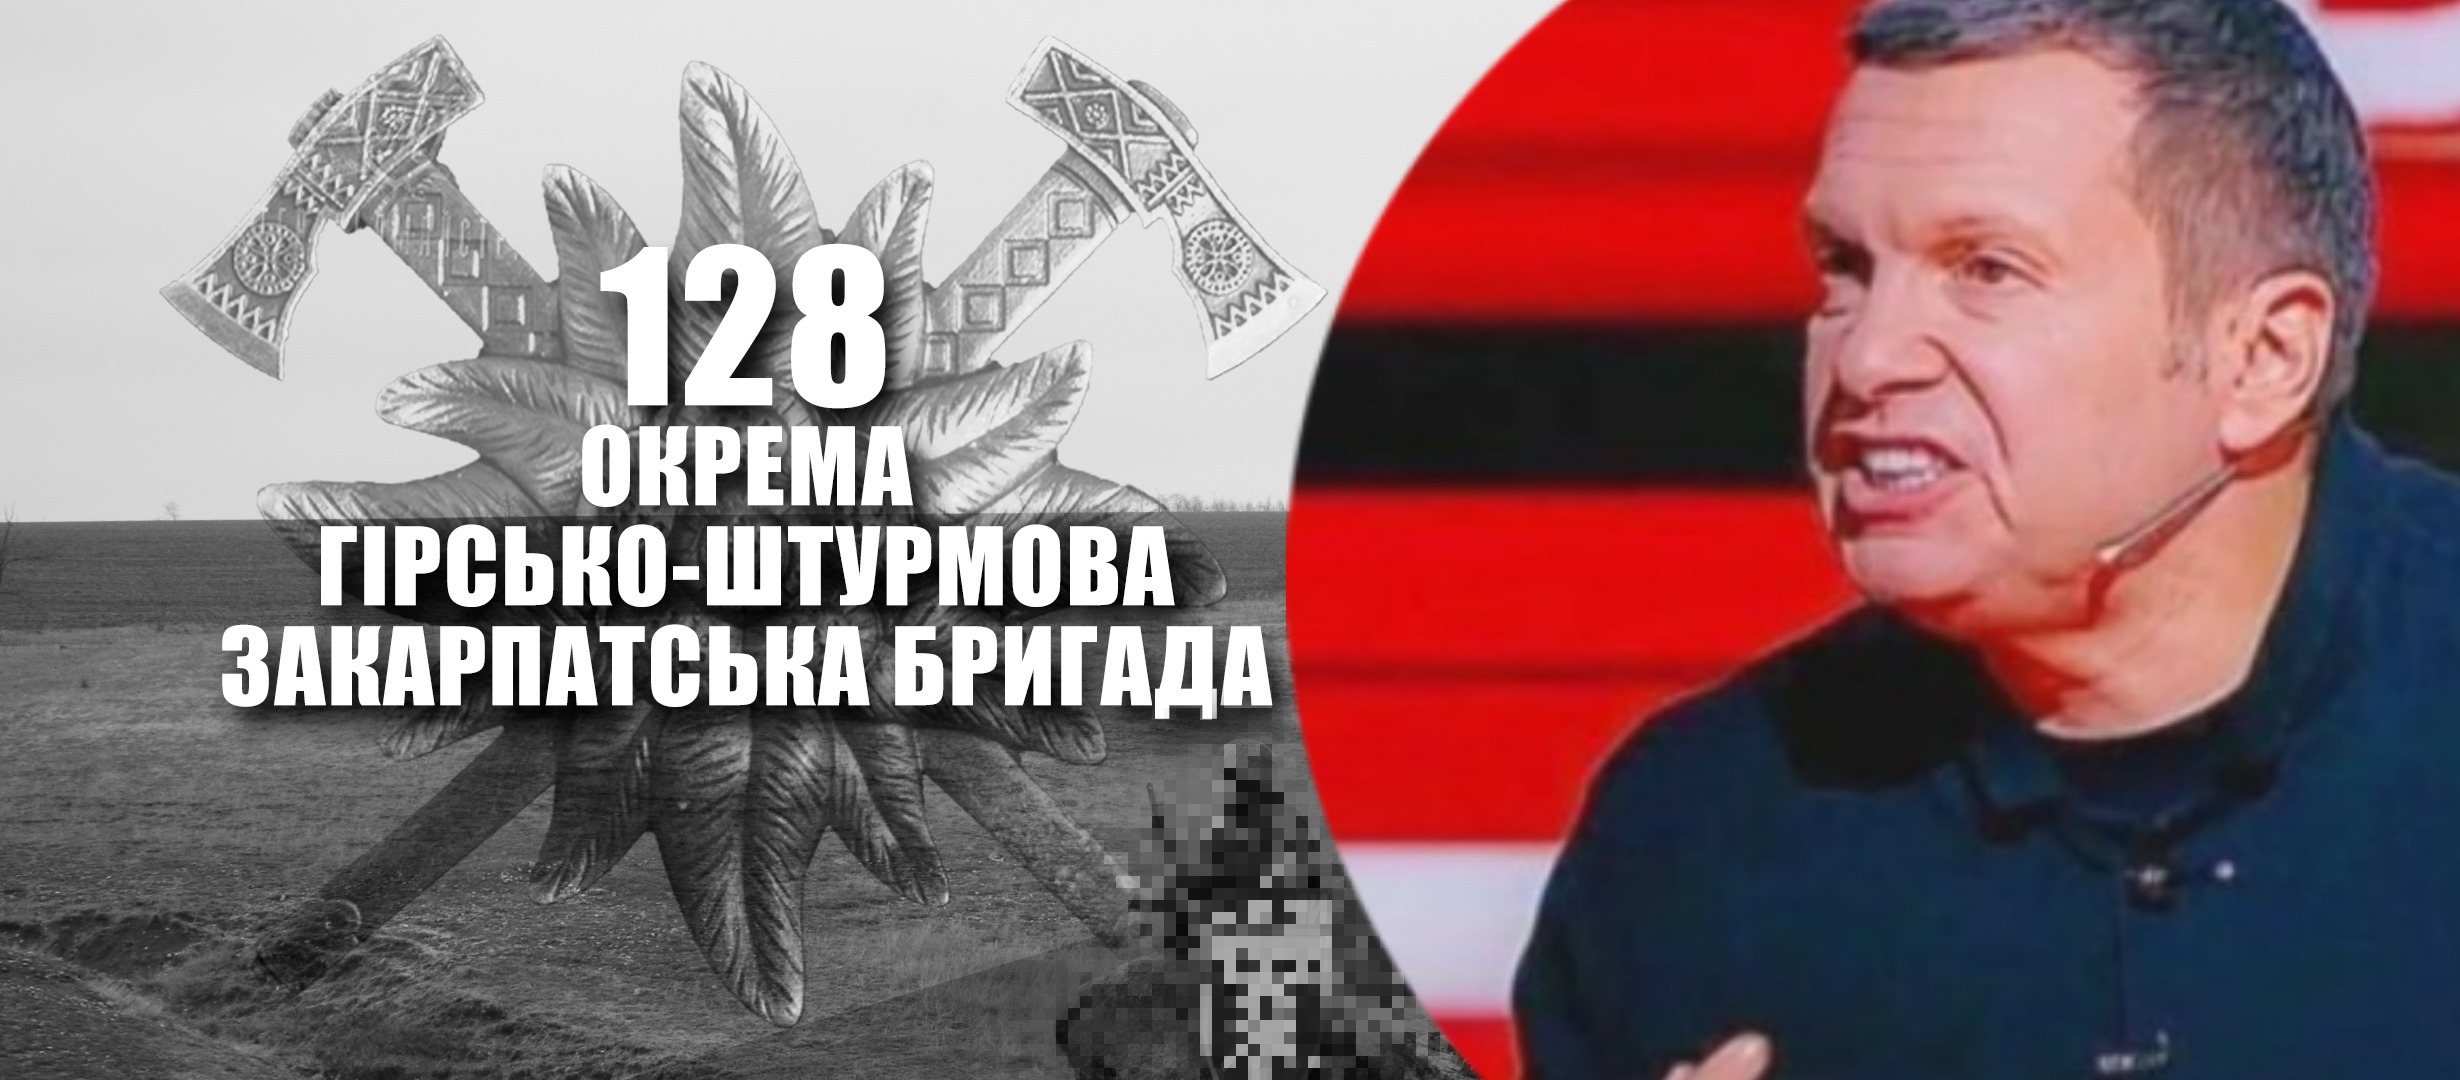 Кремльовські пропагандисти назвали бійців 128-ї гірсько-штурмової бригади сатанистами, через кумедний відеоролик, на якому військові розповідають про новий 